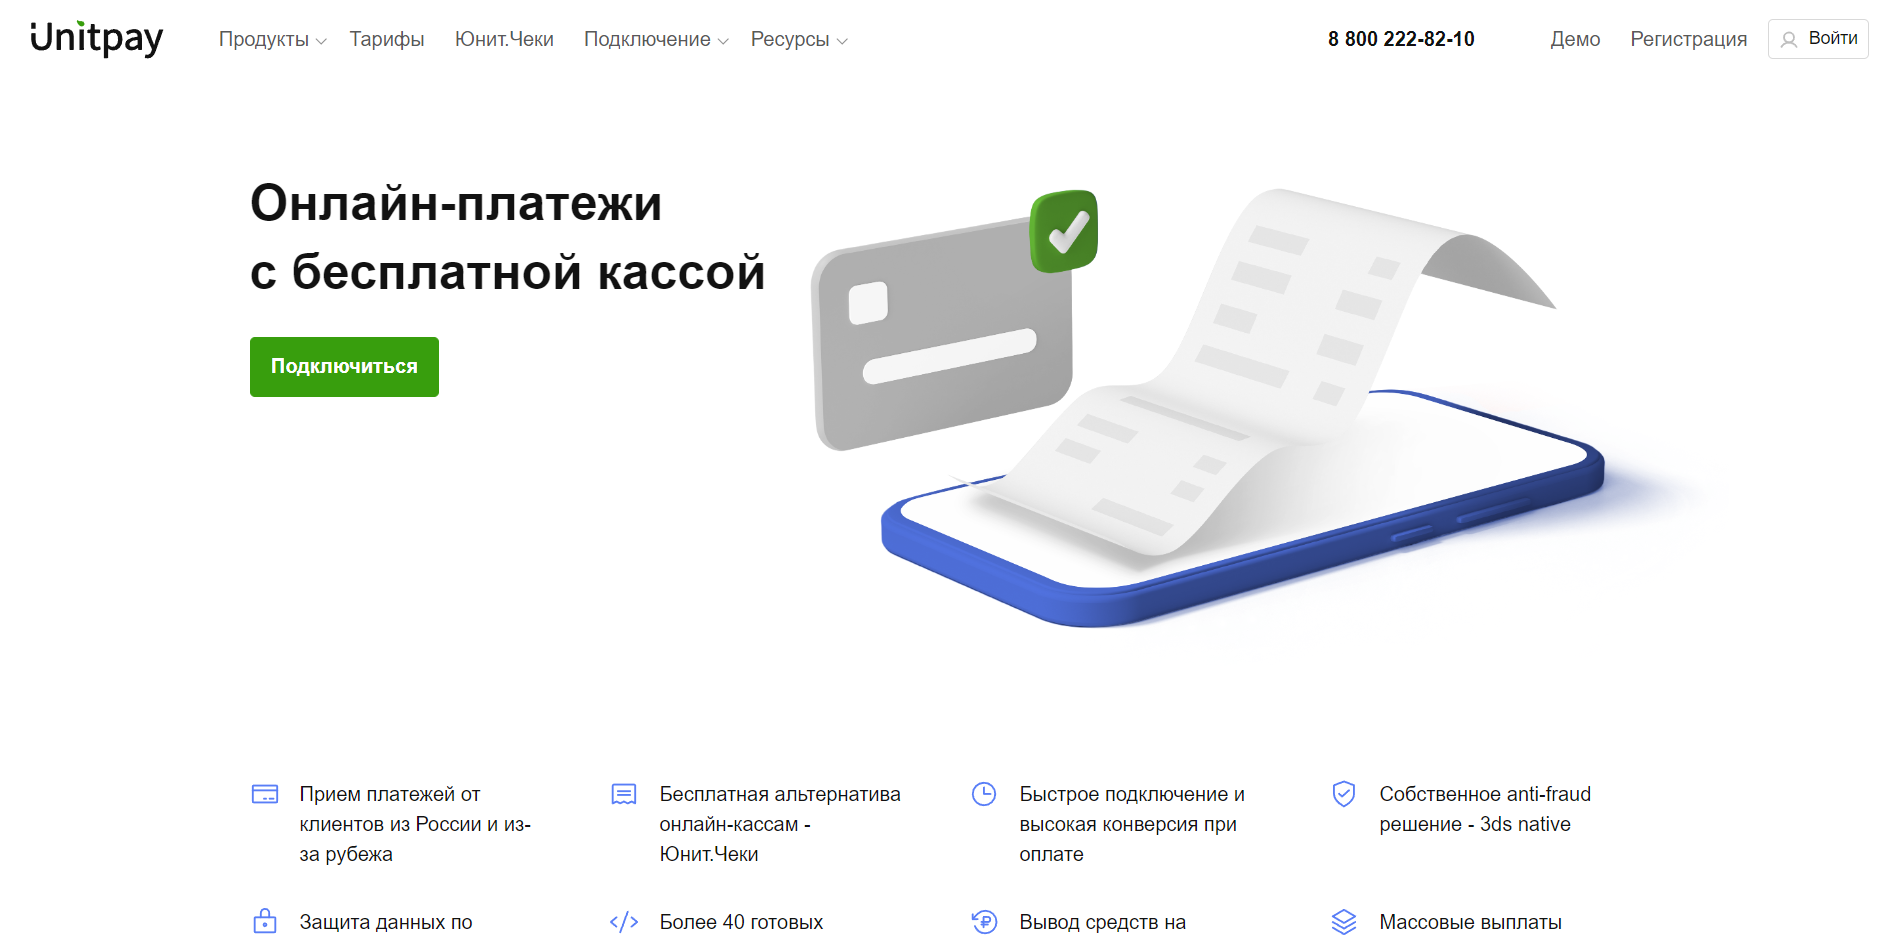 Обзор платежного сервиса Unitpay.ru: комиссии и отзывы пользователей.